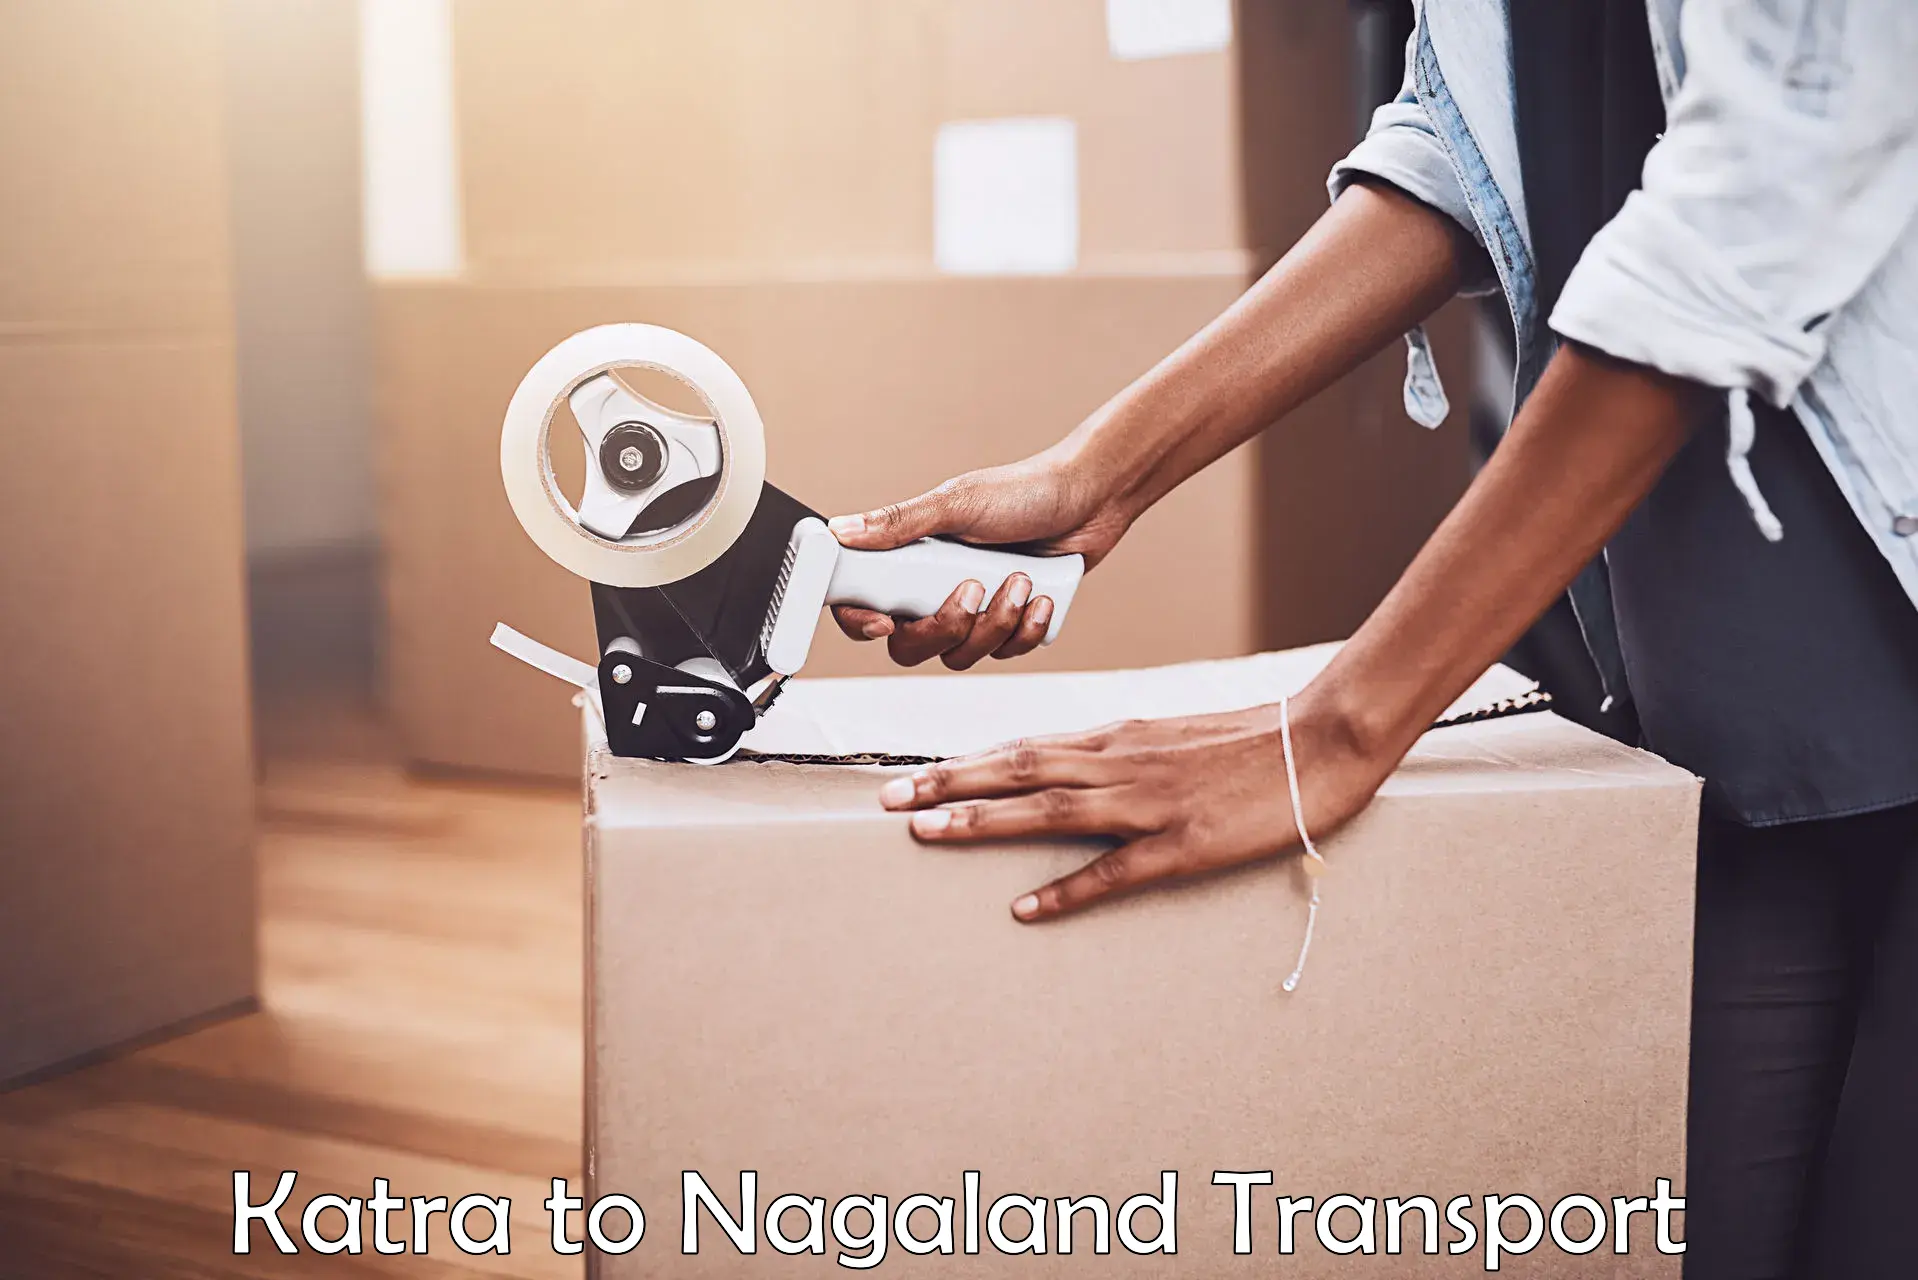 Air cargo transport services Katra to Nagaland